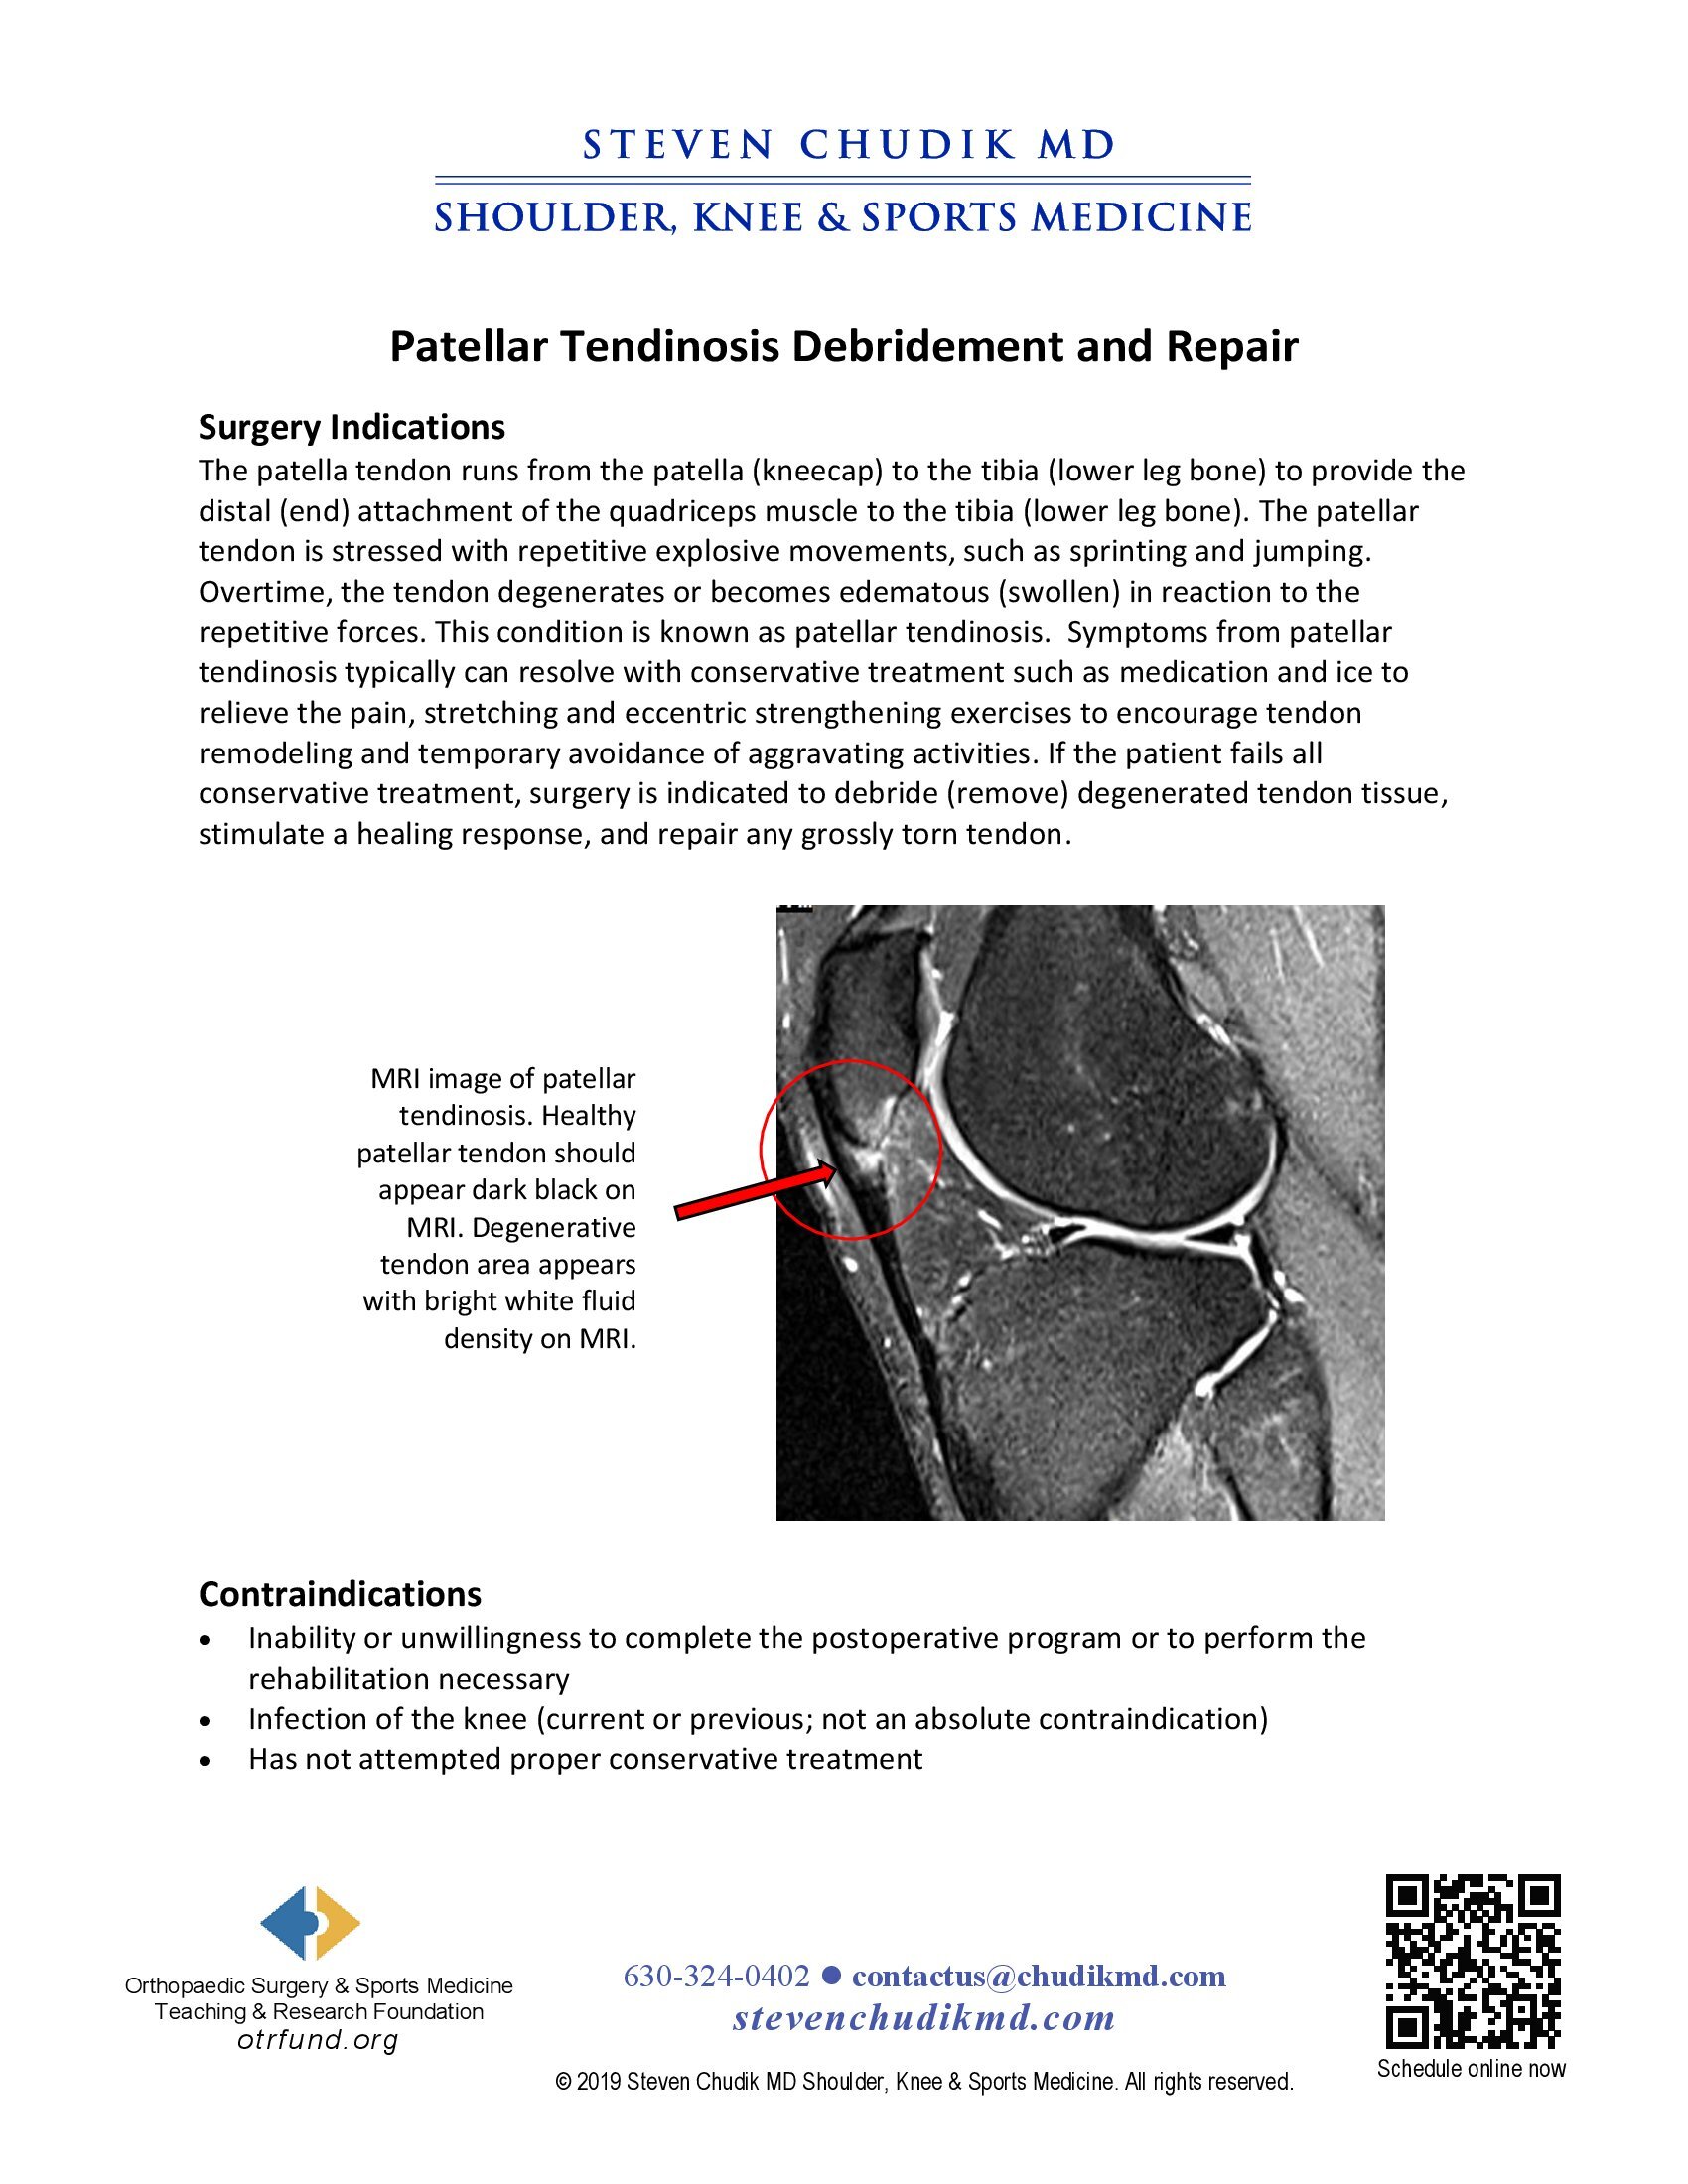 Patellar Tendinosis Debridement and Repair - Steven Chudik MD